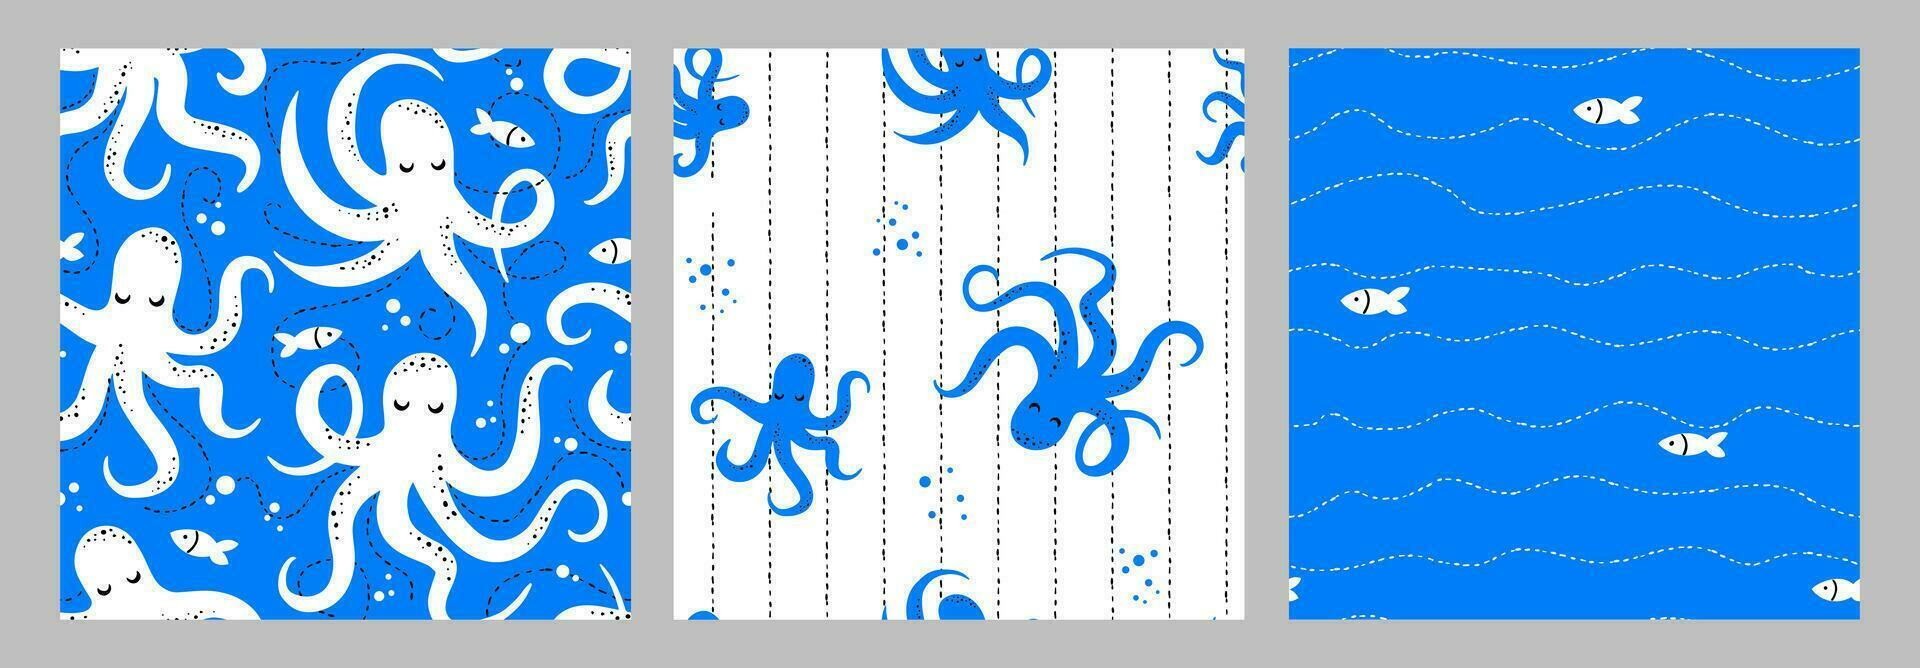 ein einstellen von nahtlos Marine Muster mit Tintenfische. Kinder- Design zum Stoff, Papier, Verpackung, Kleidung vektor